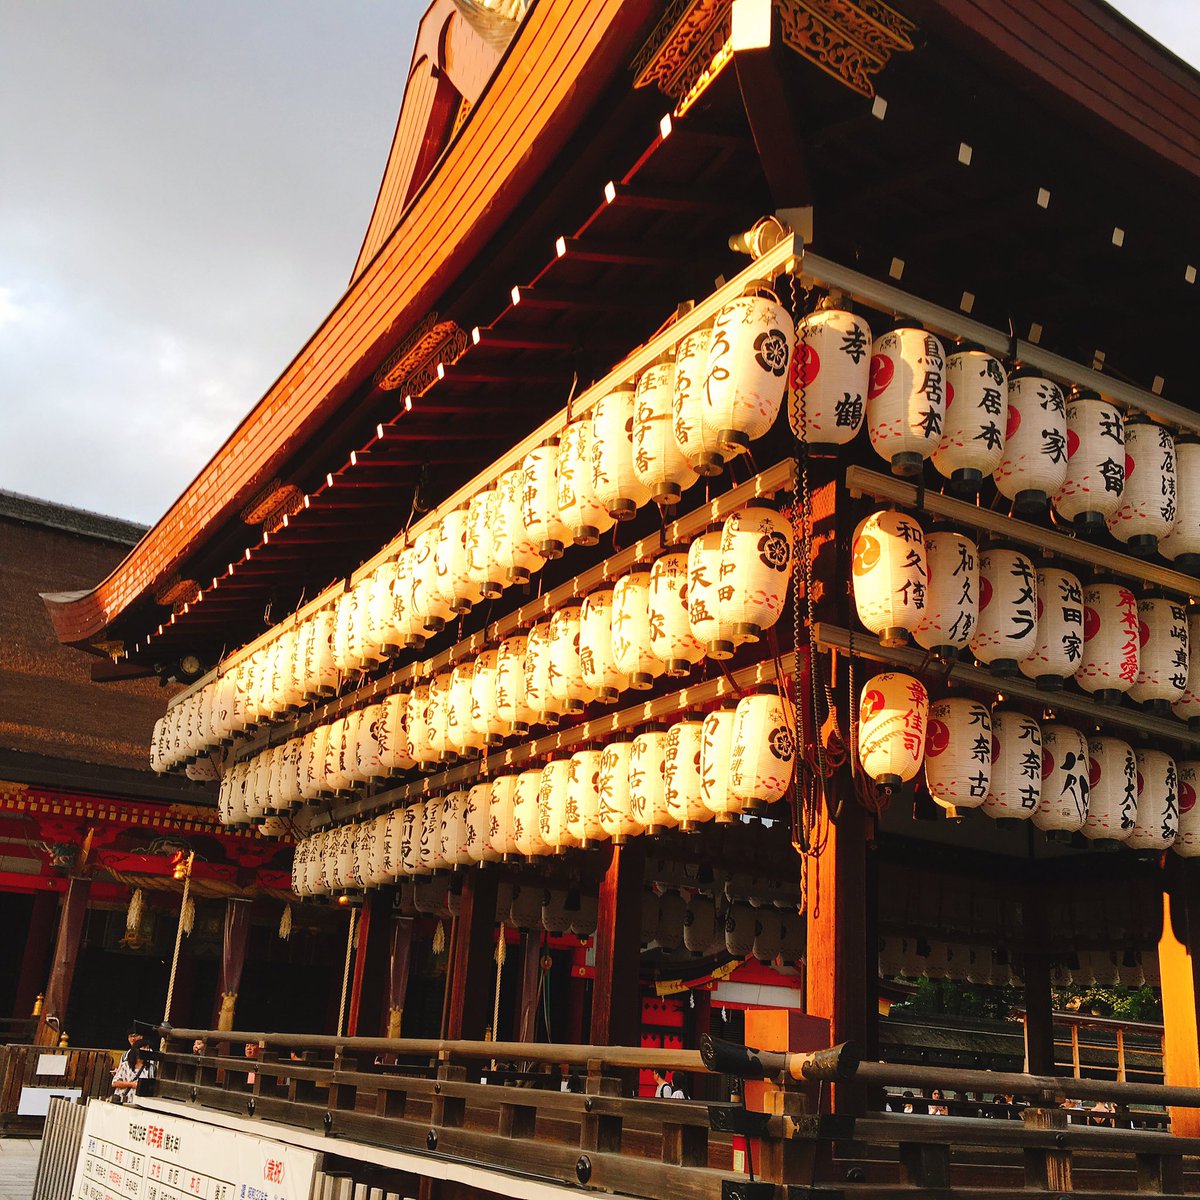 お盆休みに休暇取れたから京都と有馬温泉旅行 鴨川と八坂神社久しぶりに行ったよ 